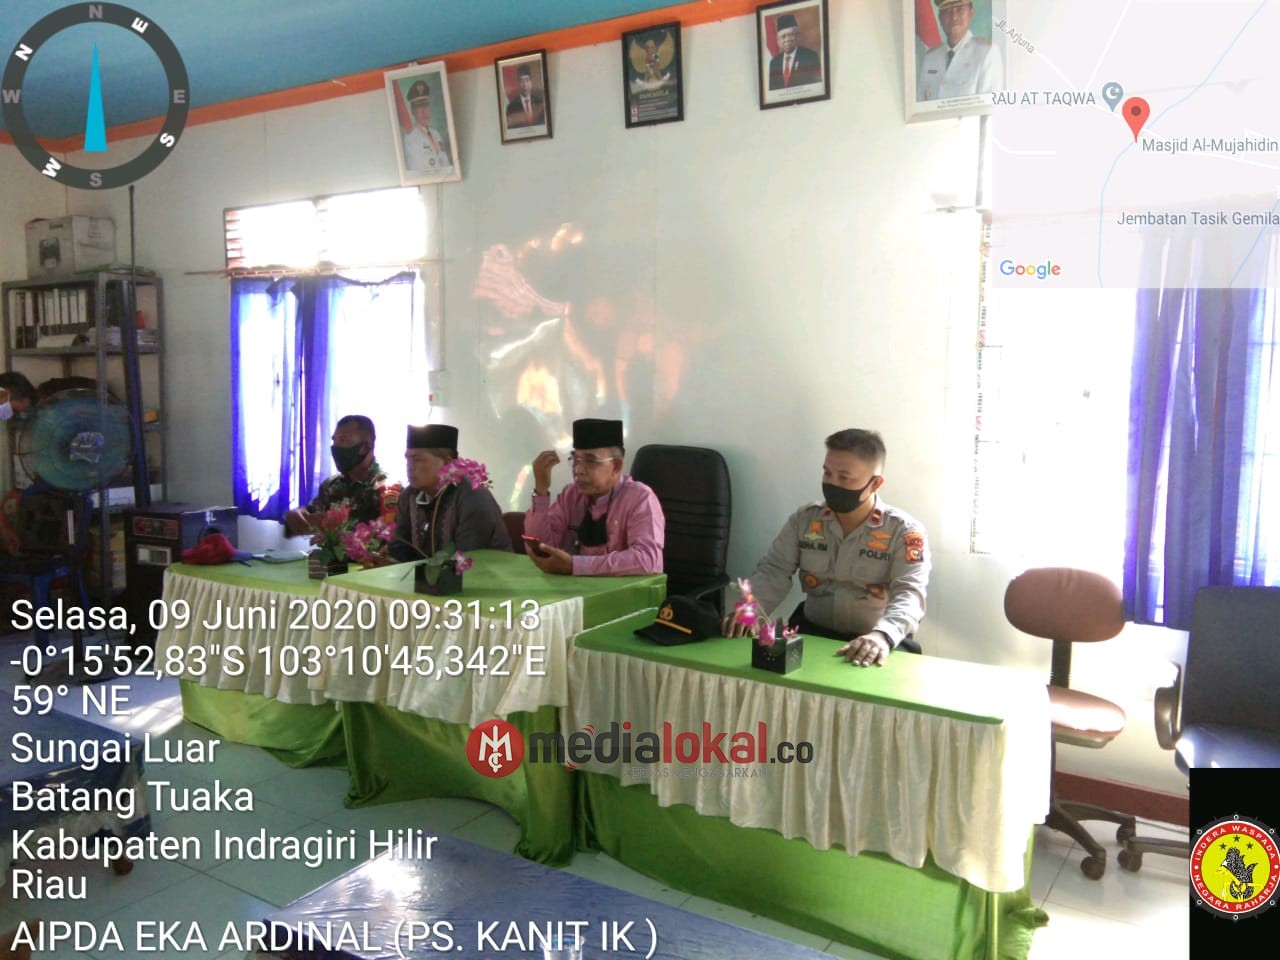 Camat Batang Tuaka bersama Forkopimcam Sosialisasikan Protokol Aman Covid-19 Desa Sungai Luar